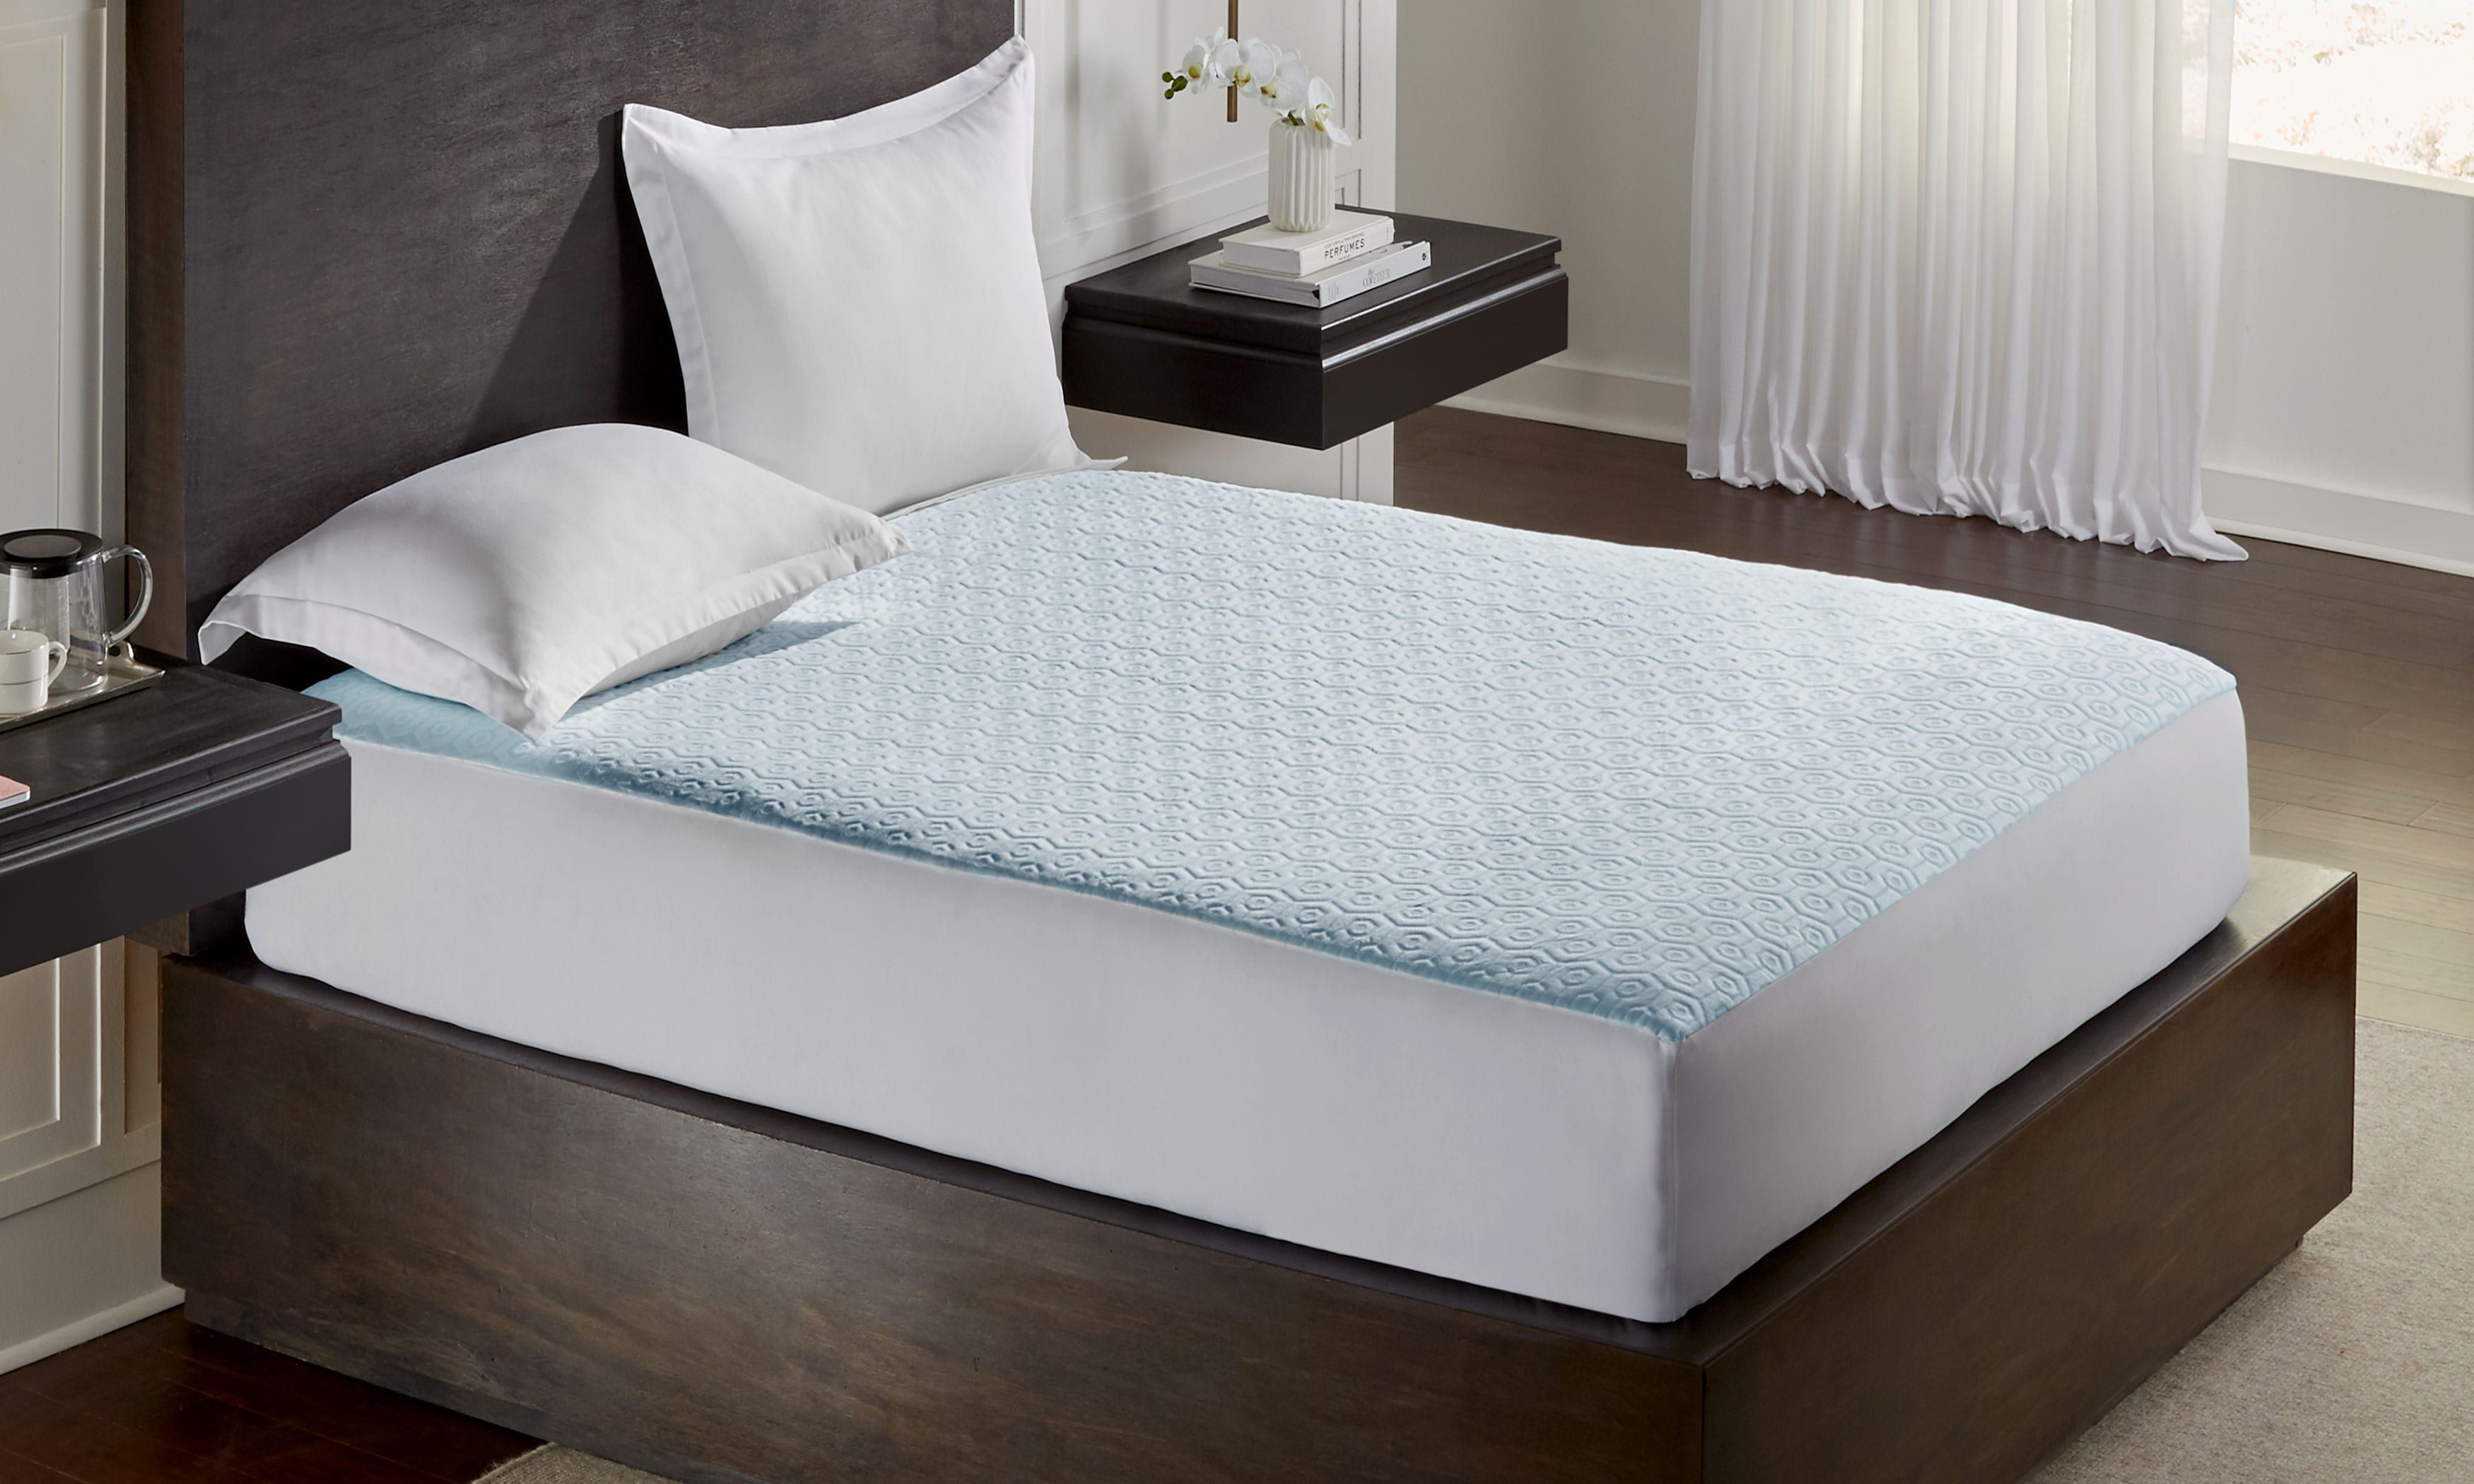 cooling mattress protector for 7 inch foam mattress